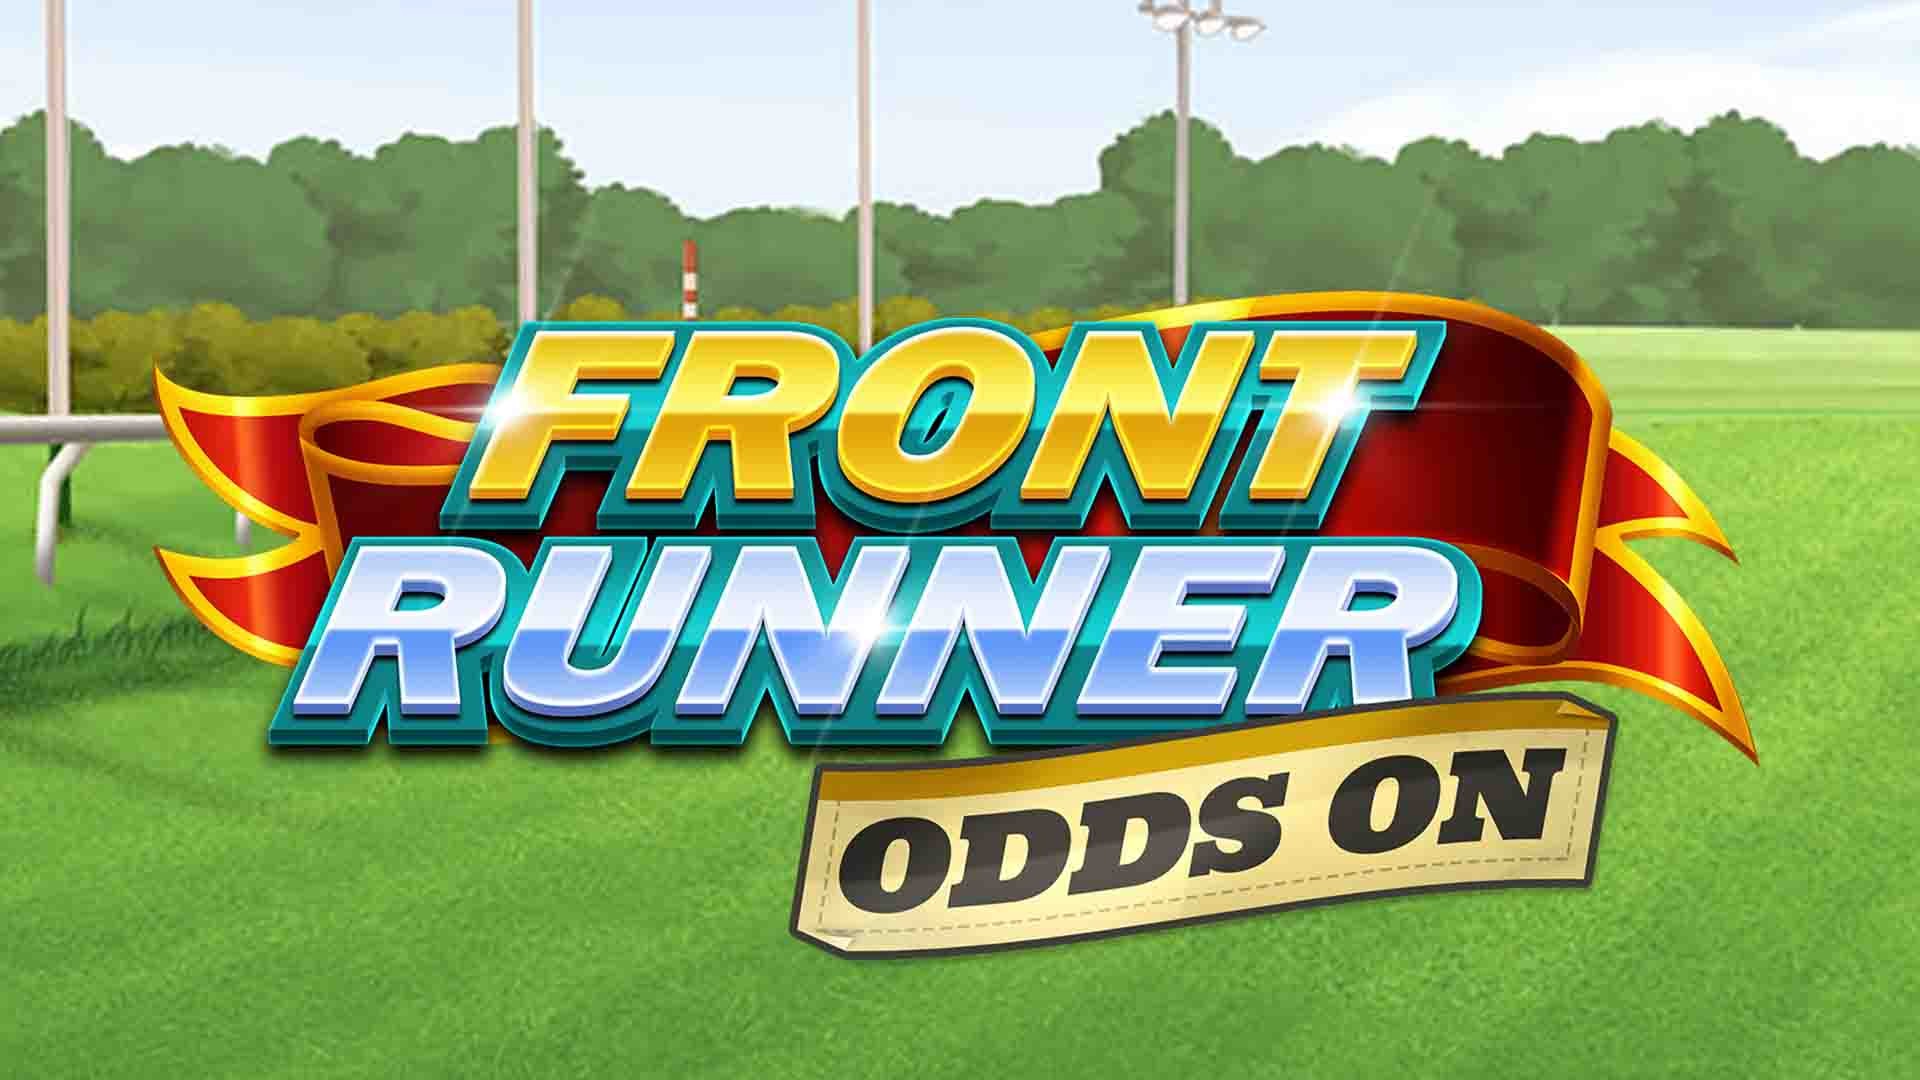 Front Runner Odds On